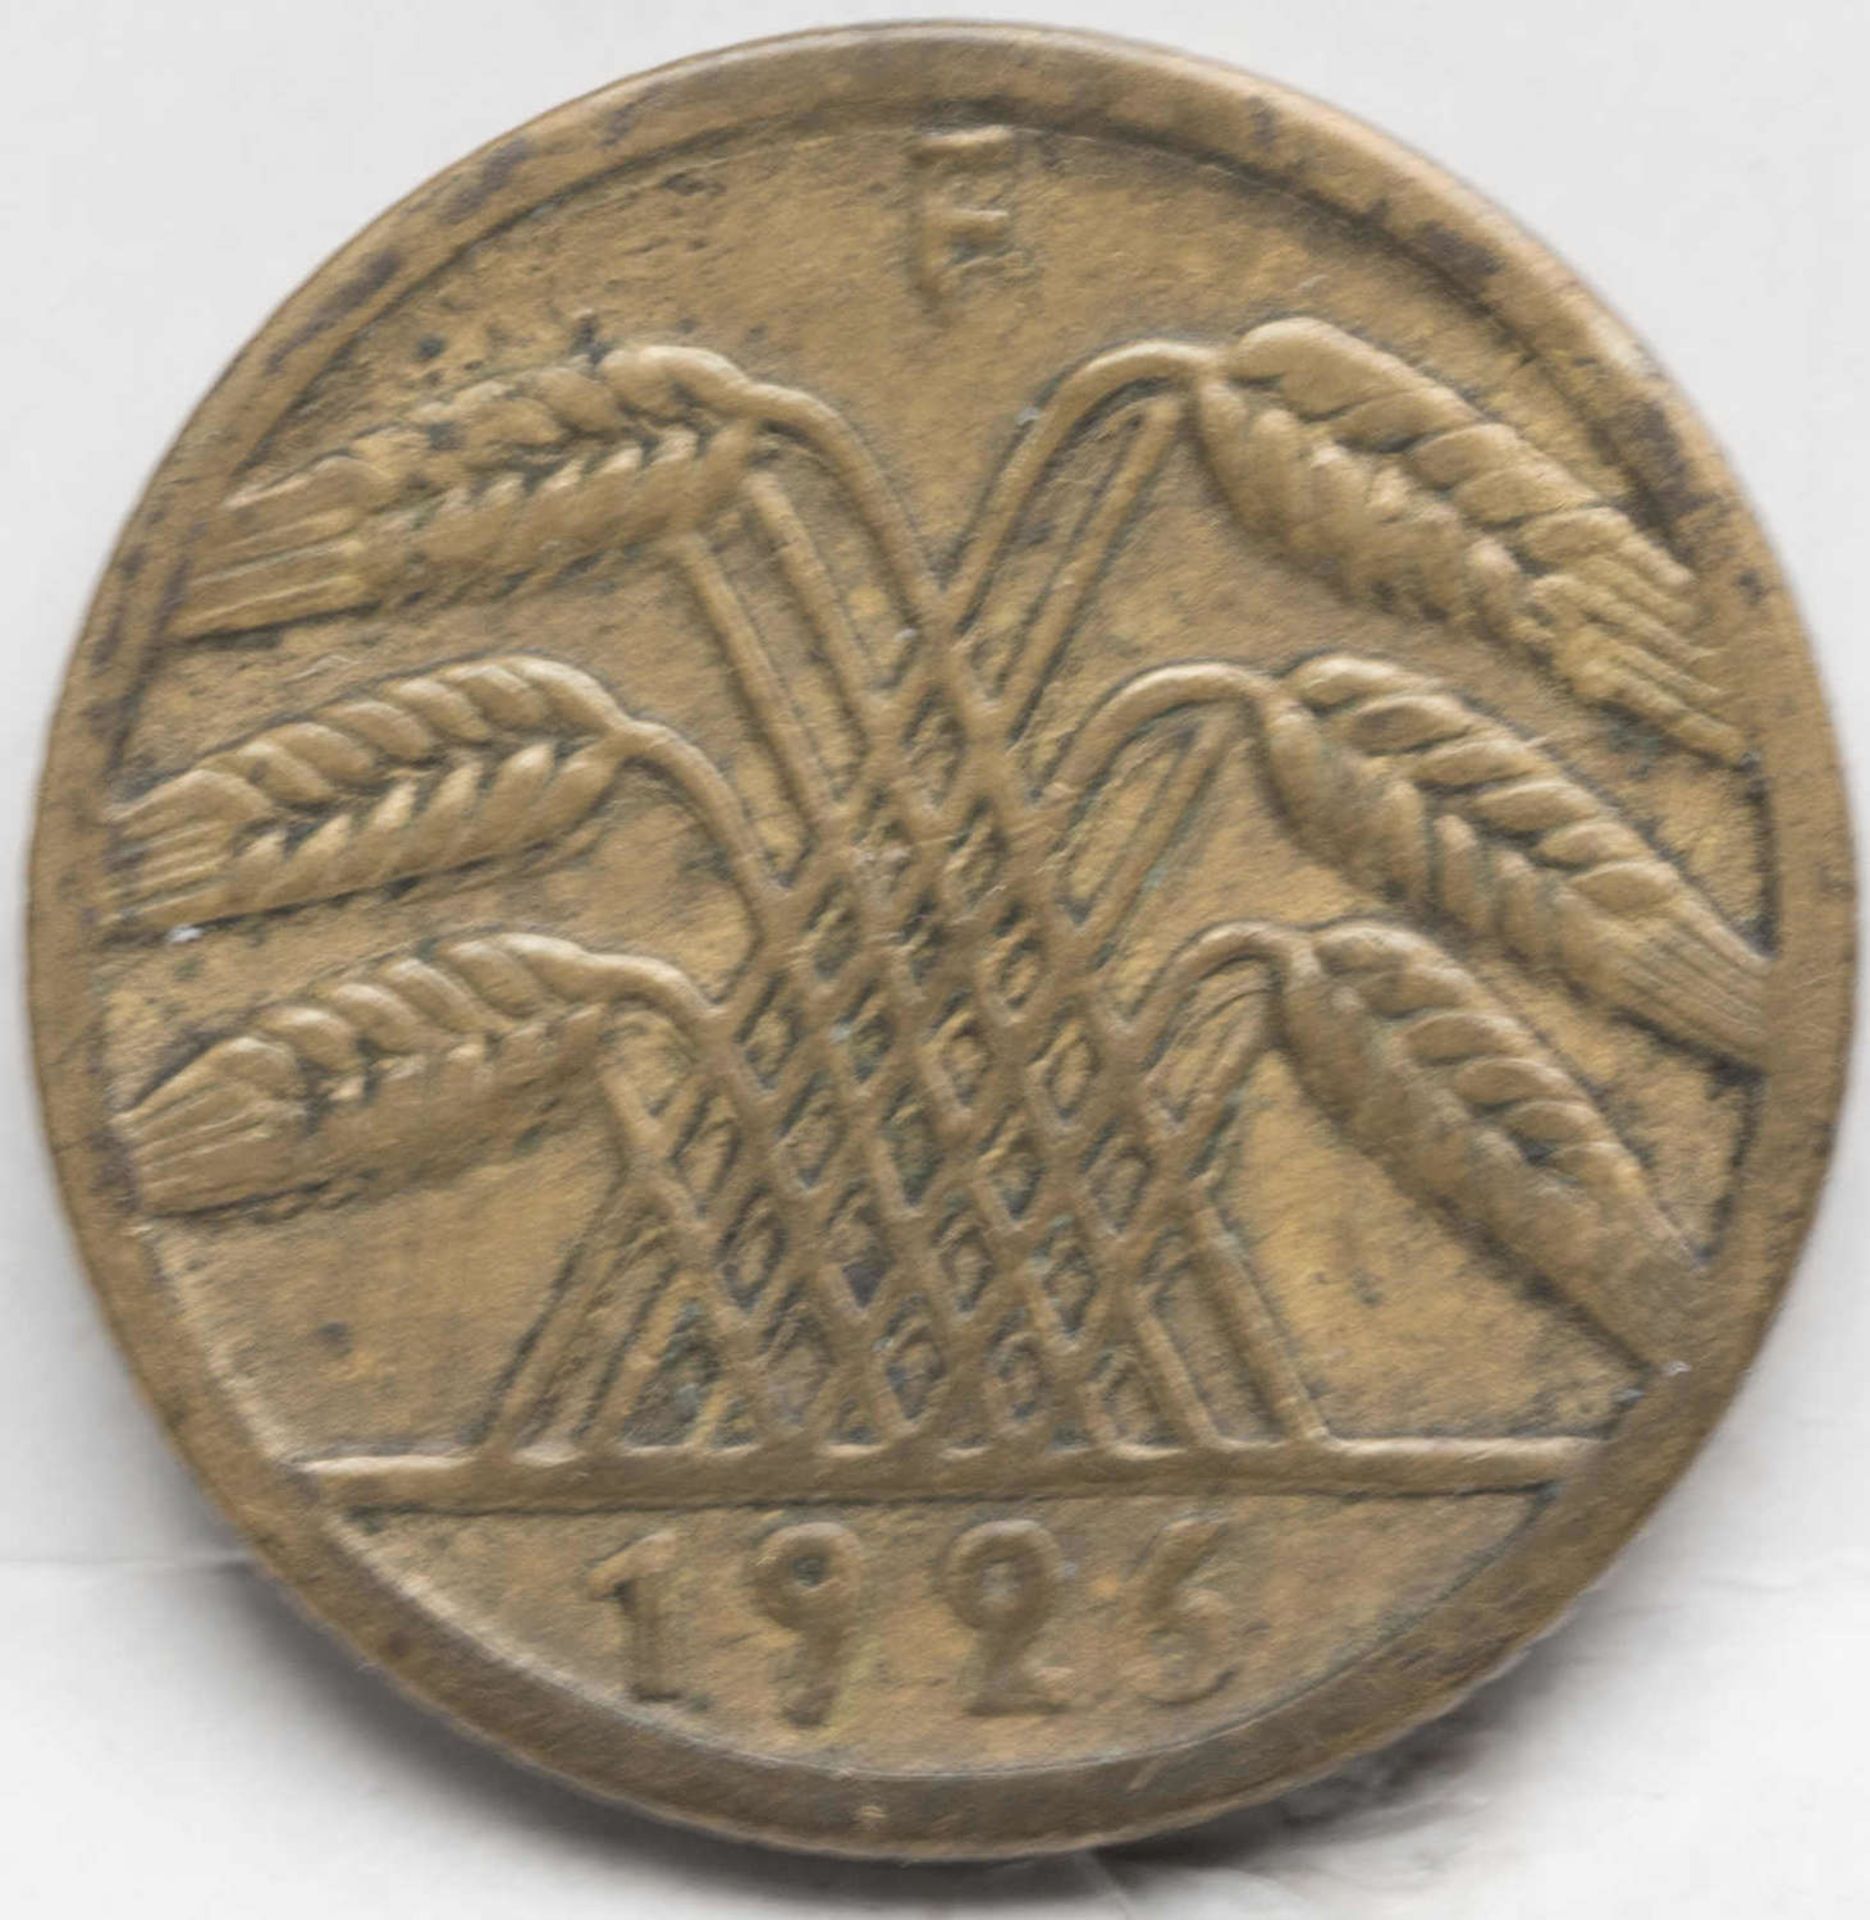 Deutsches Reich 1926 F, 5 Pfennig. Erhaltung: ss.Deutsches Reich 1926 F, 5 Pfennig. Erhaltung: ss. - Bild 2 aus 2